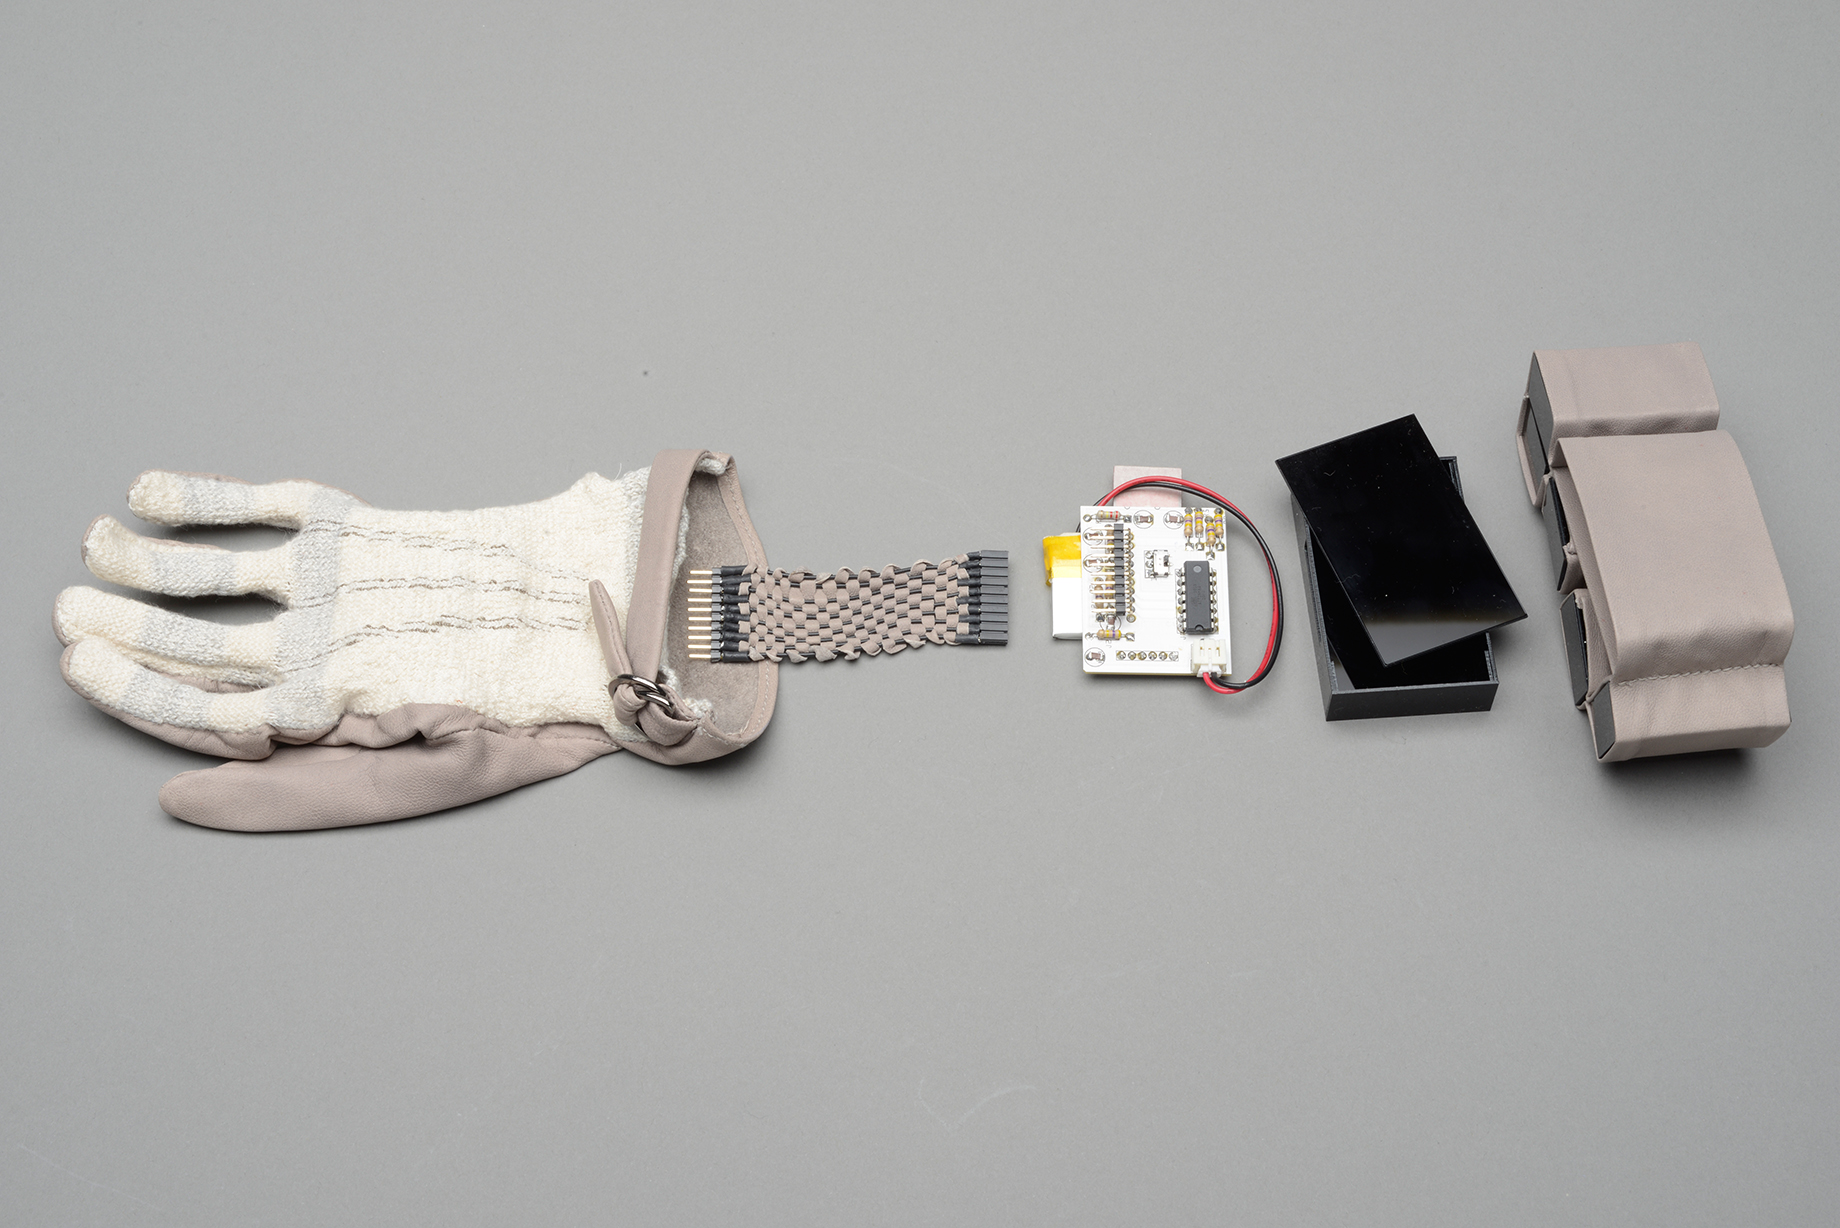 E-Textile Sensing Glove
